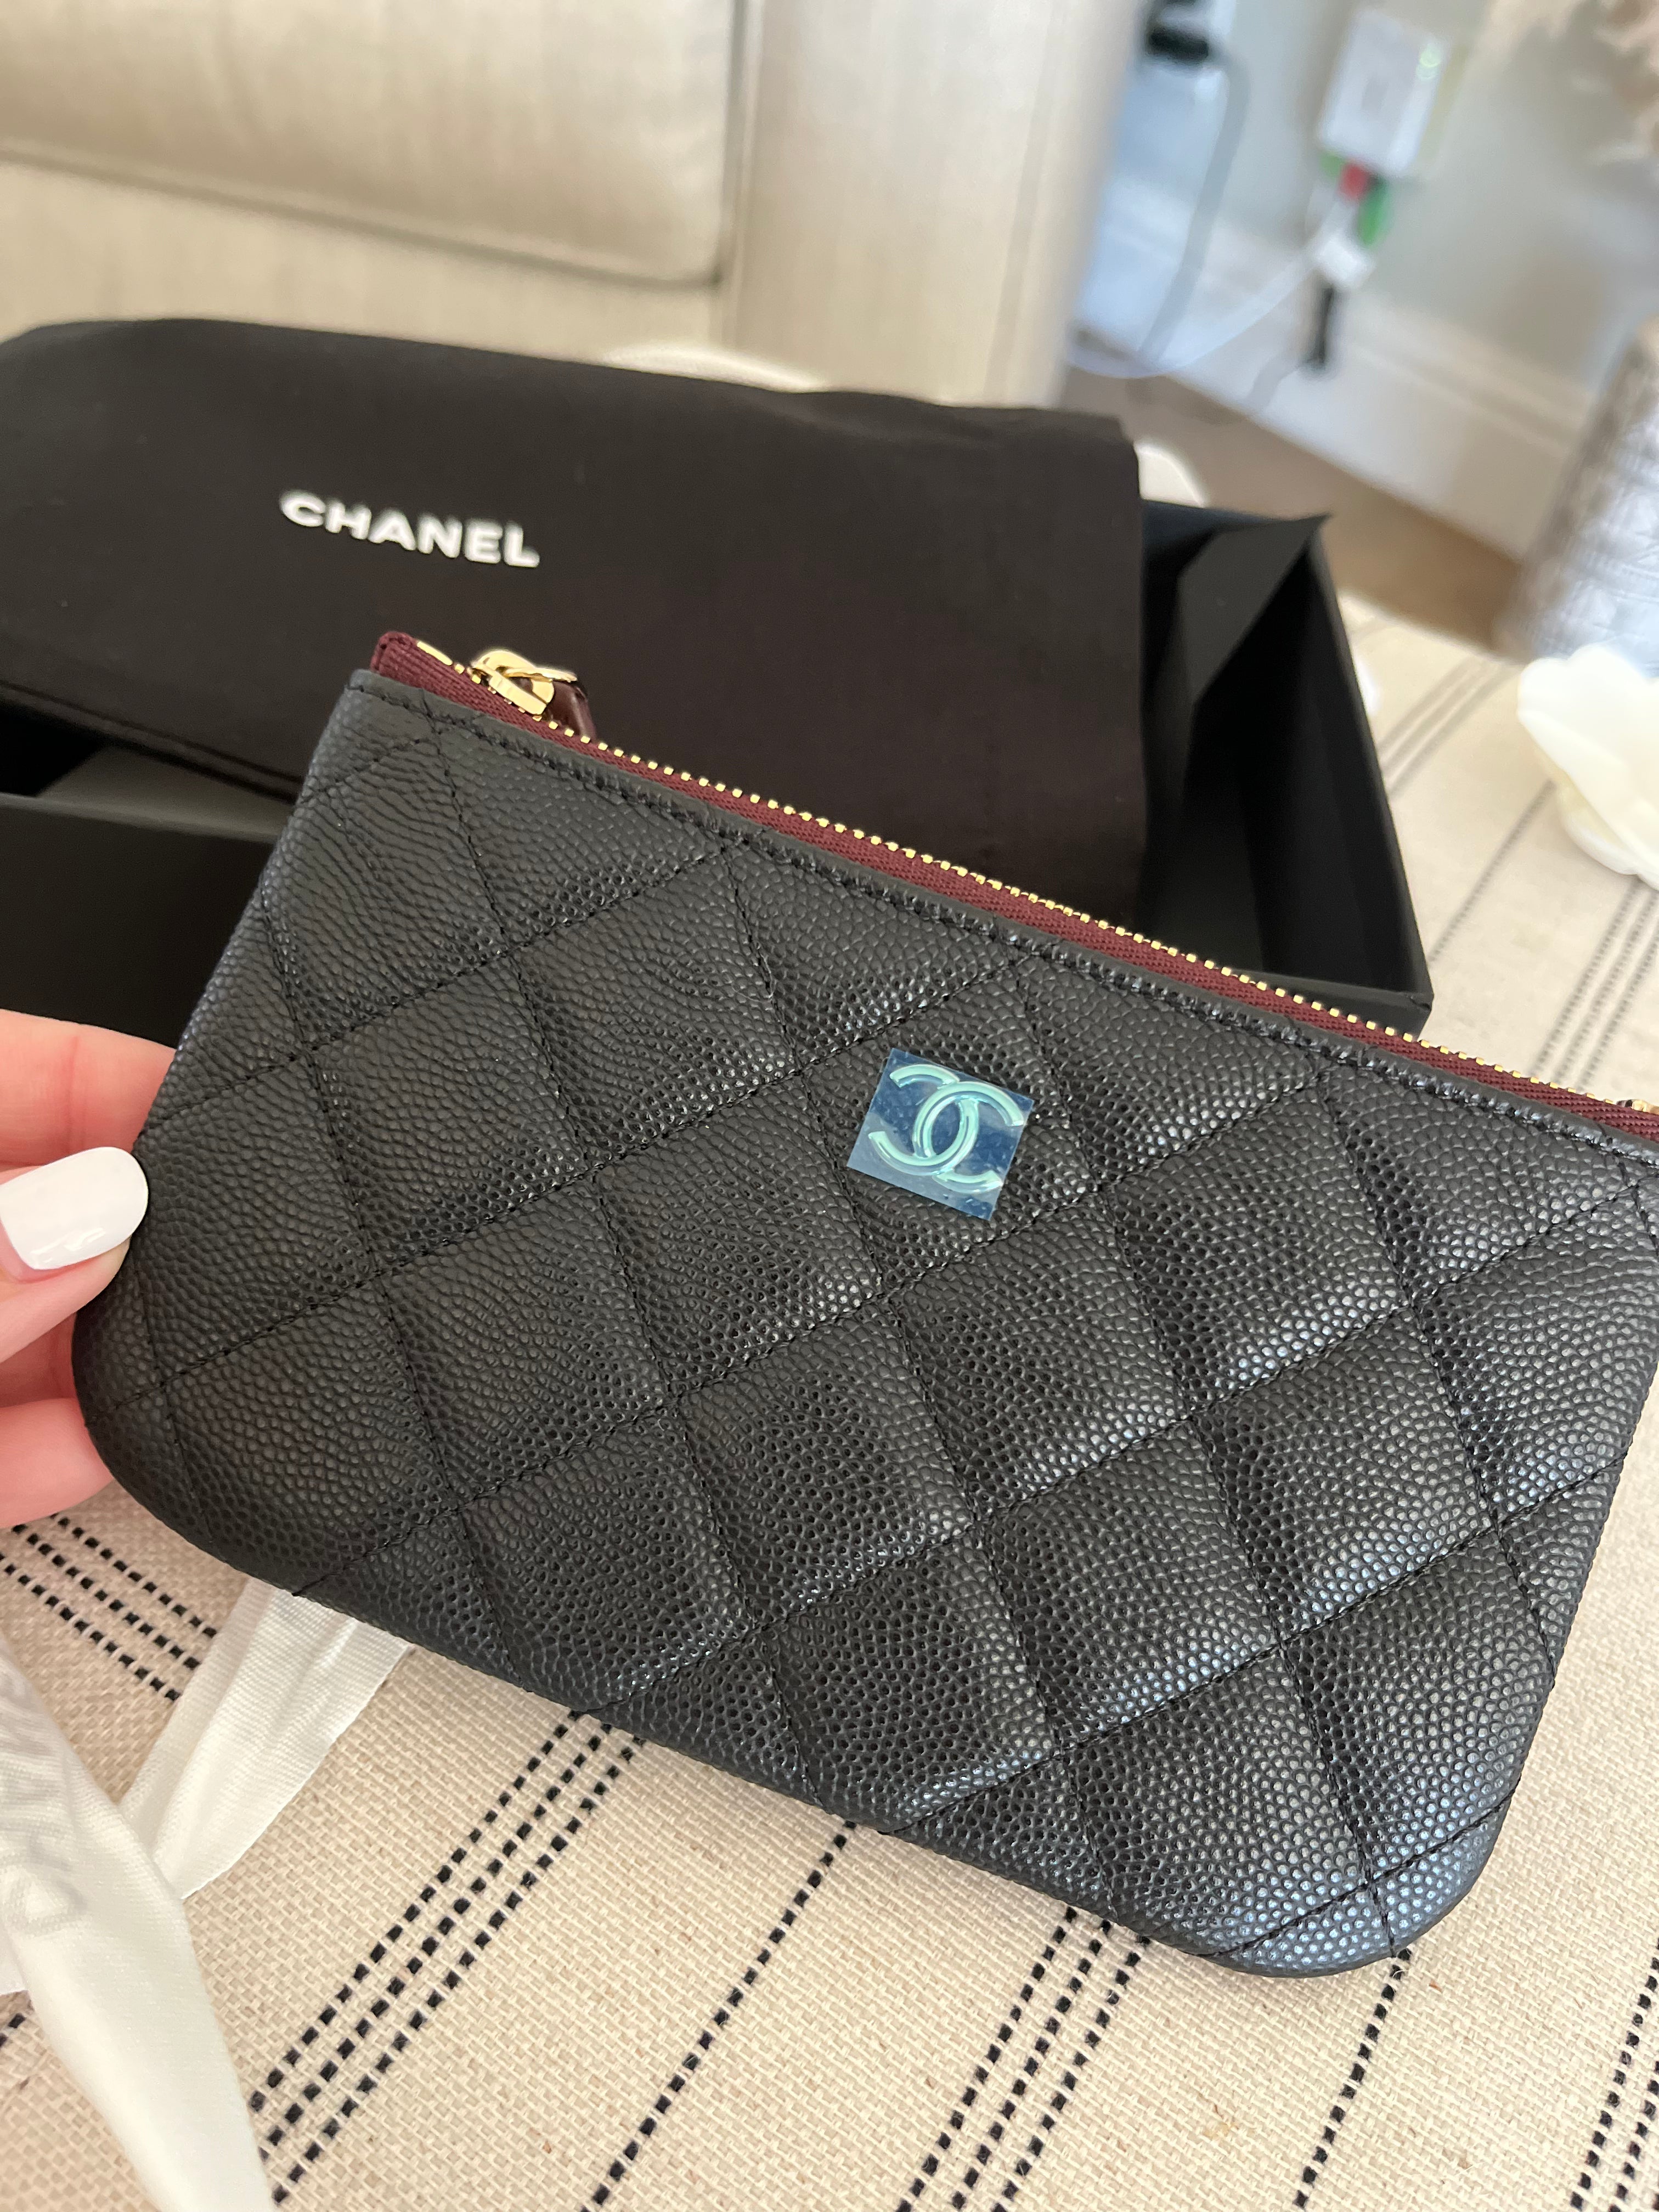 Chanel Classic Mini Pouch in Caviar / Gold Hardware